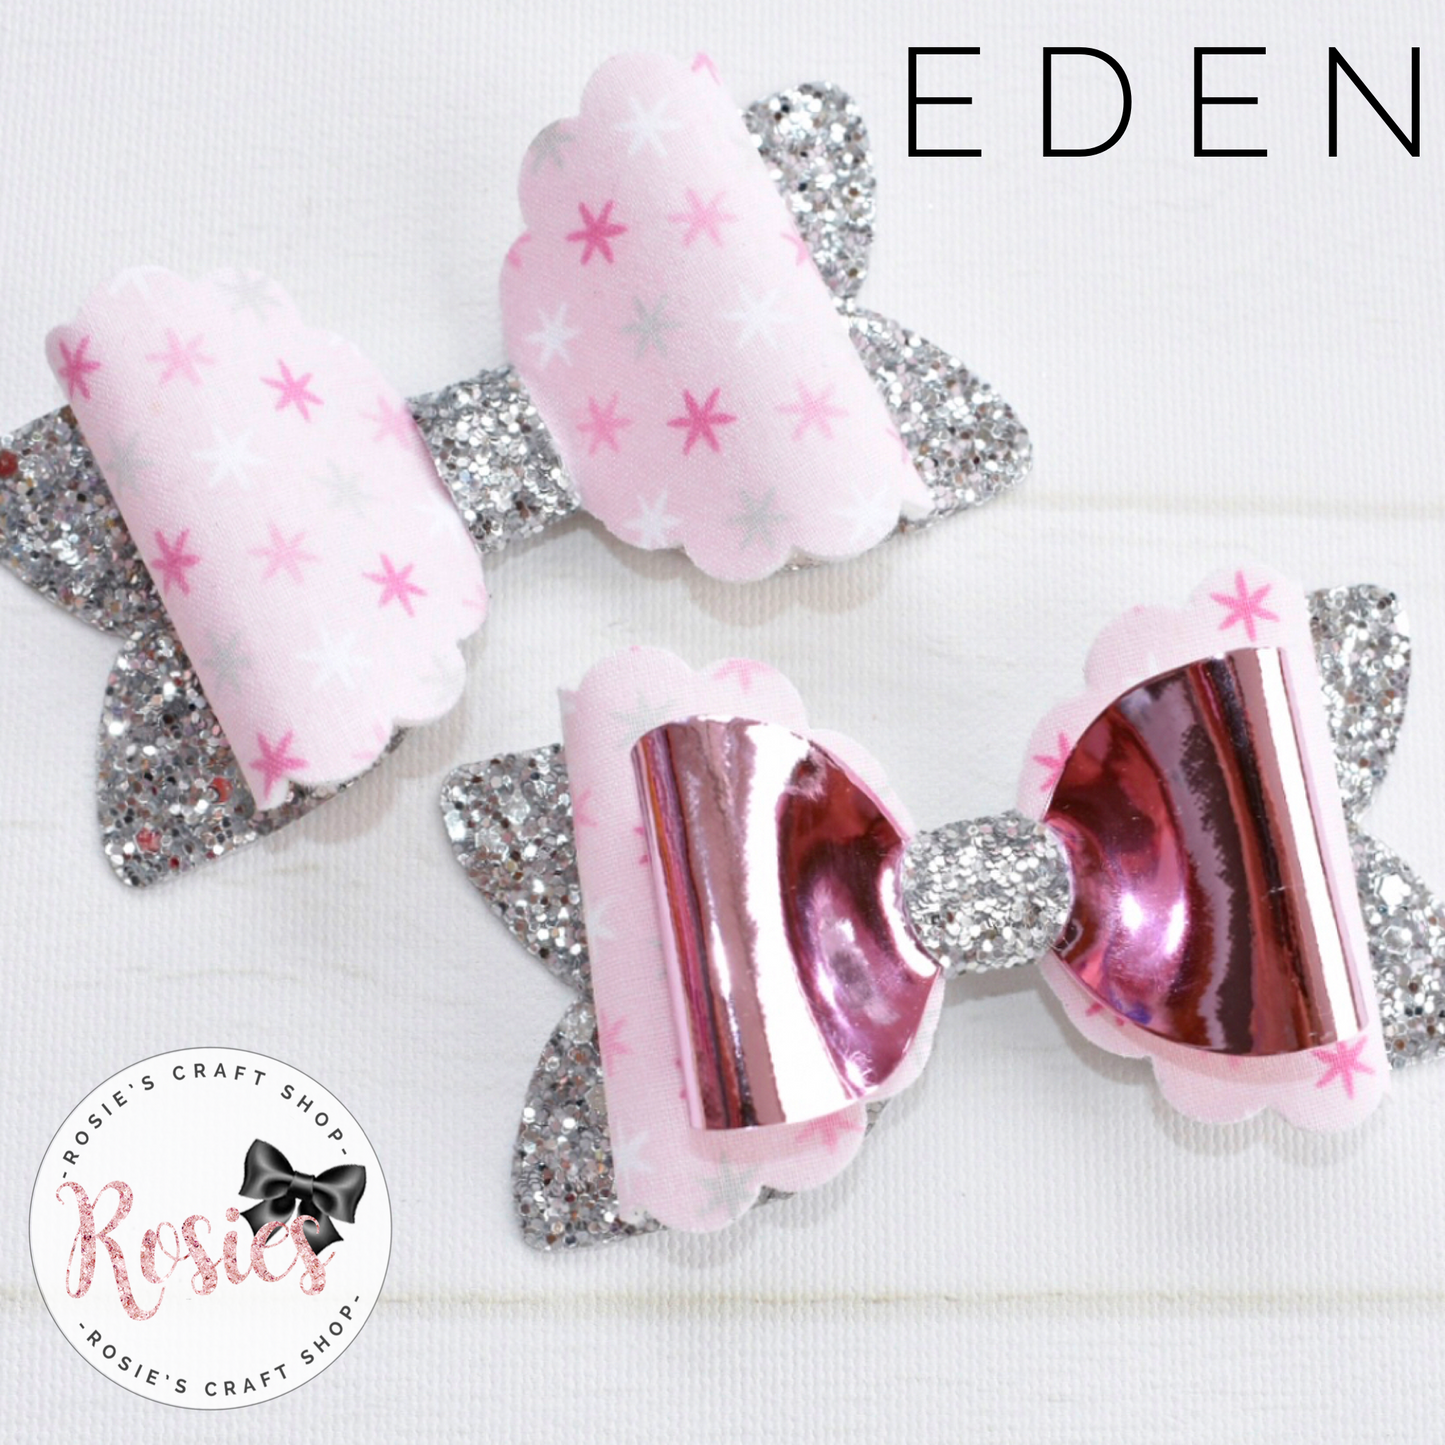 Eden Bow Plastic Template. - Rosie's Craft Shop Ltd